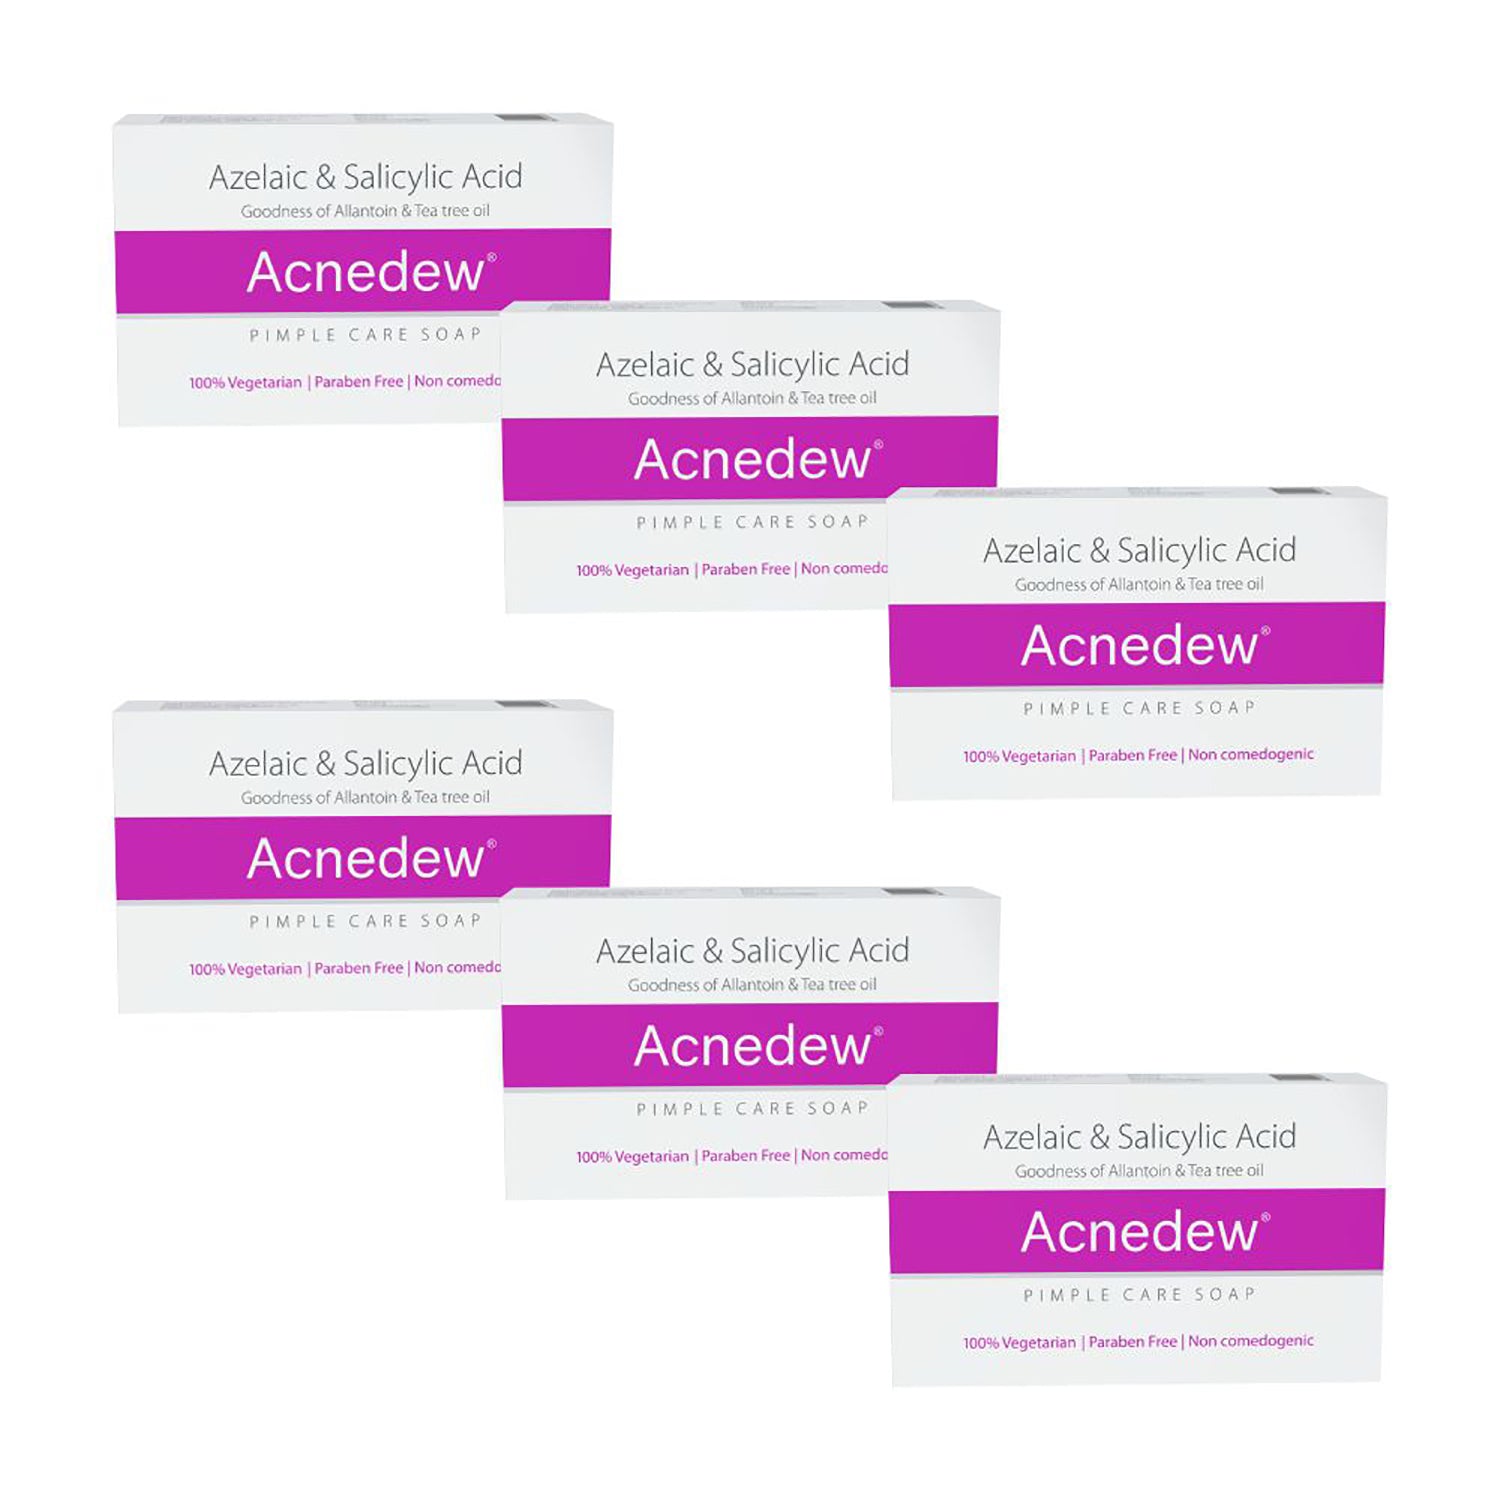 Acnedew Anti Acne & Anti Pimple Soap (75 gm)